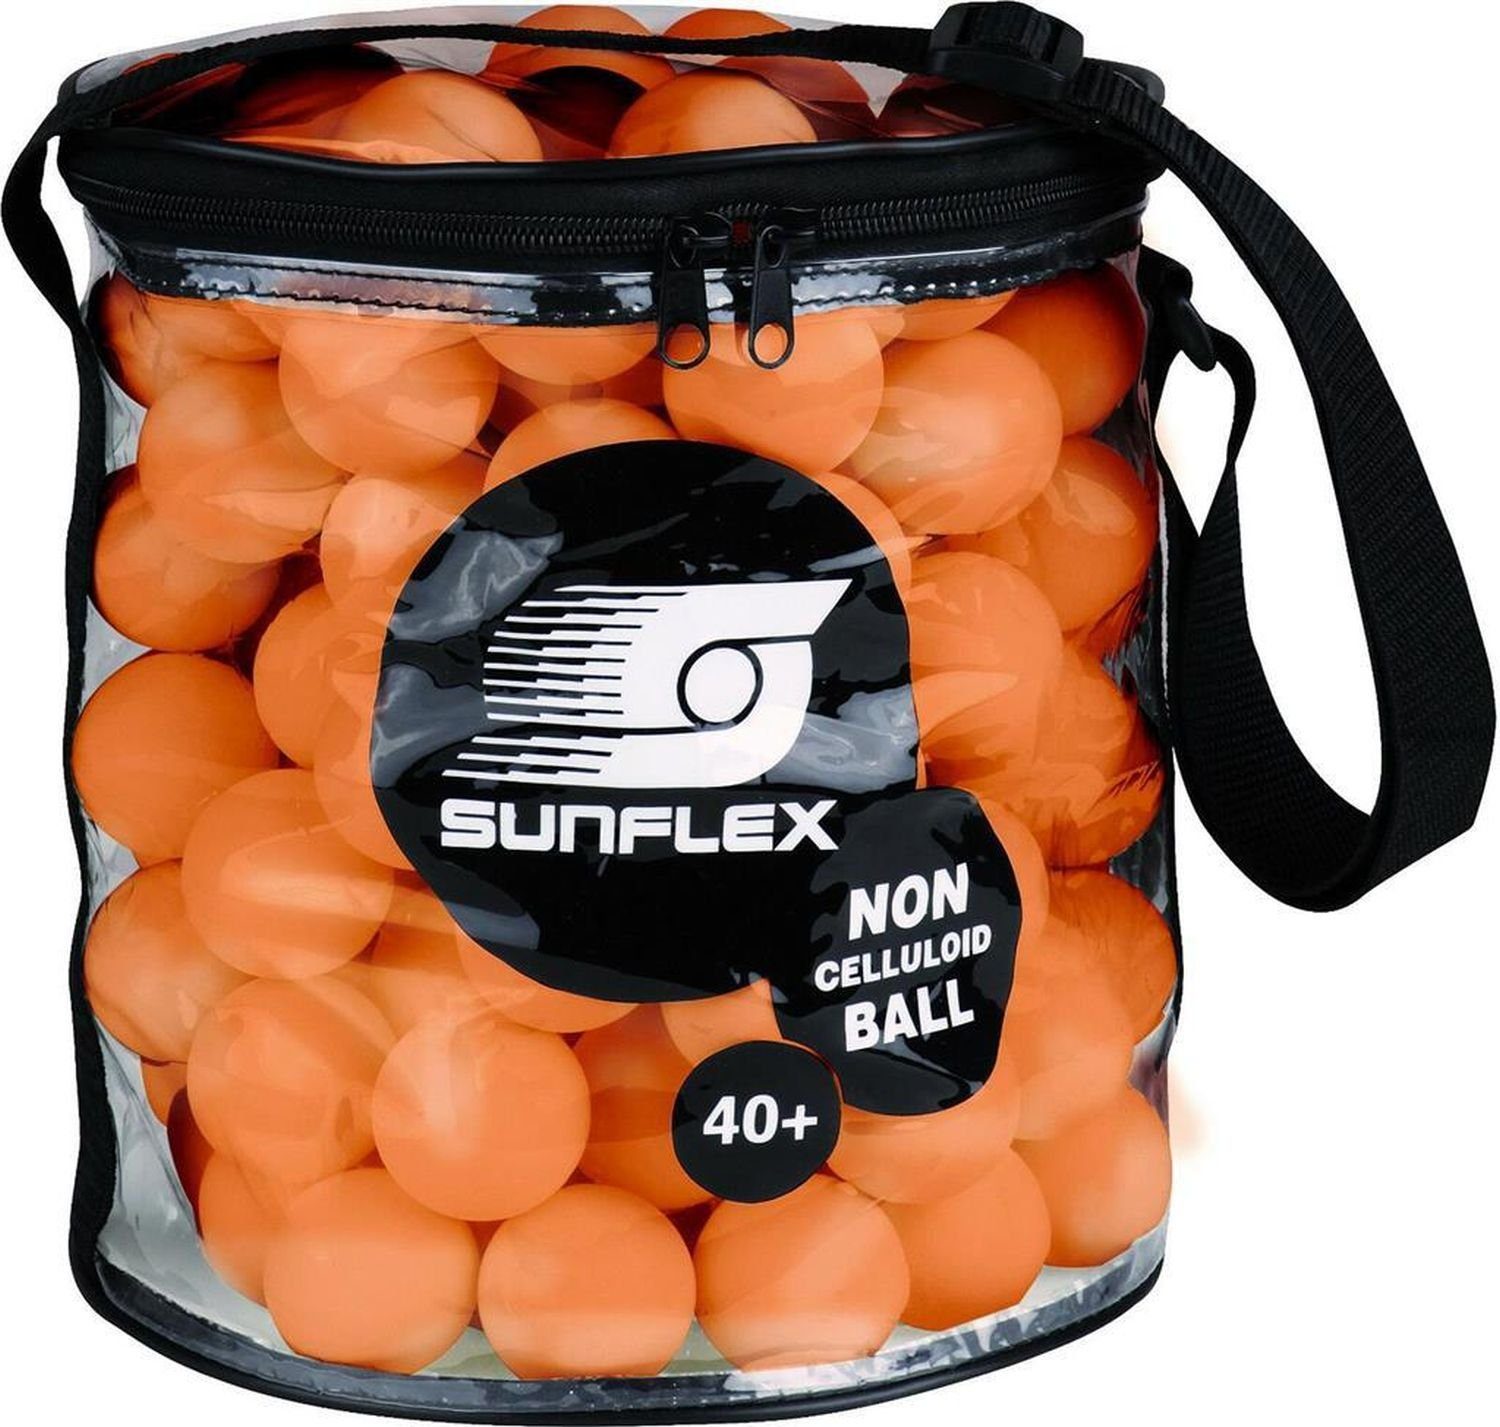 Sunflex Tischtennisball Balltasche inkl. 144 Balls Tischtennisball 40+ Ball Tischtennis orange, Bälle Tischtennisbälle